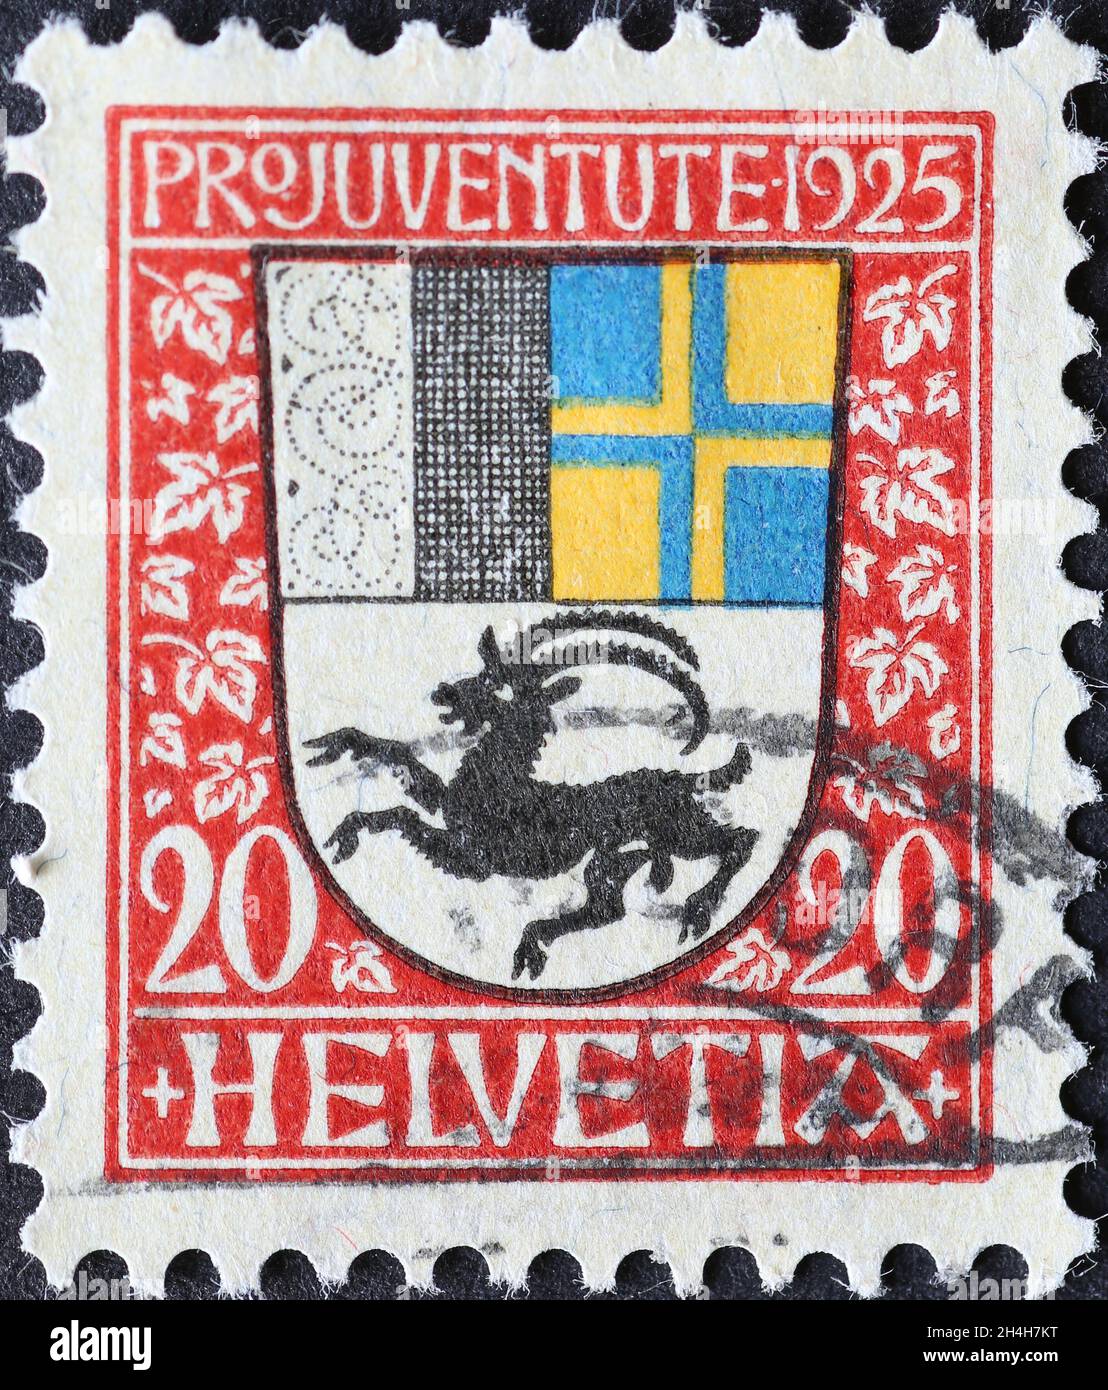 Suisse - Circa 1925: Timbre-poste imprimé en Suisse montrant un blason avec ibex du canton suisse des Grisons sur un poste de charité Banque D'Images